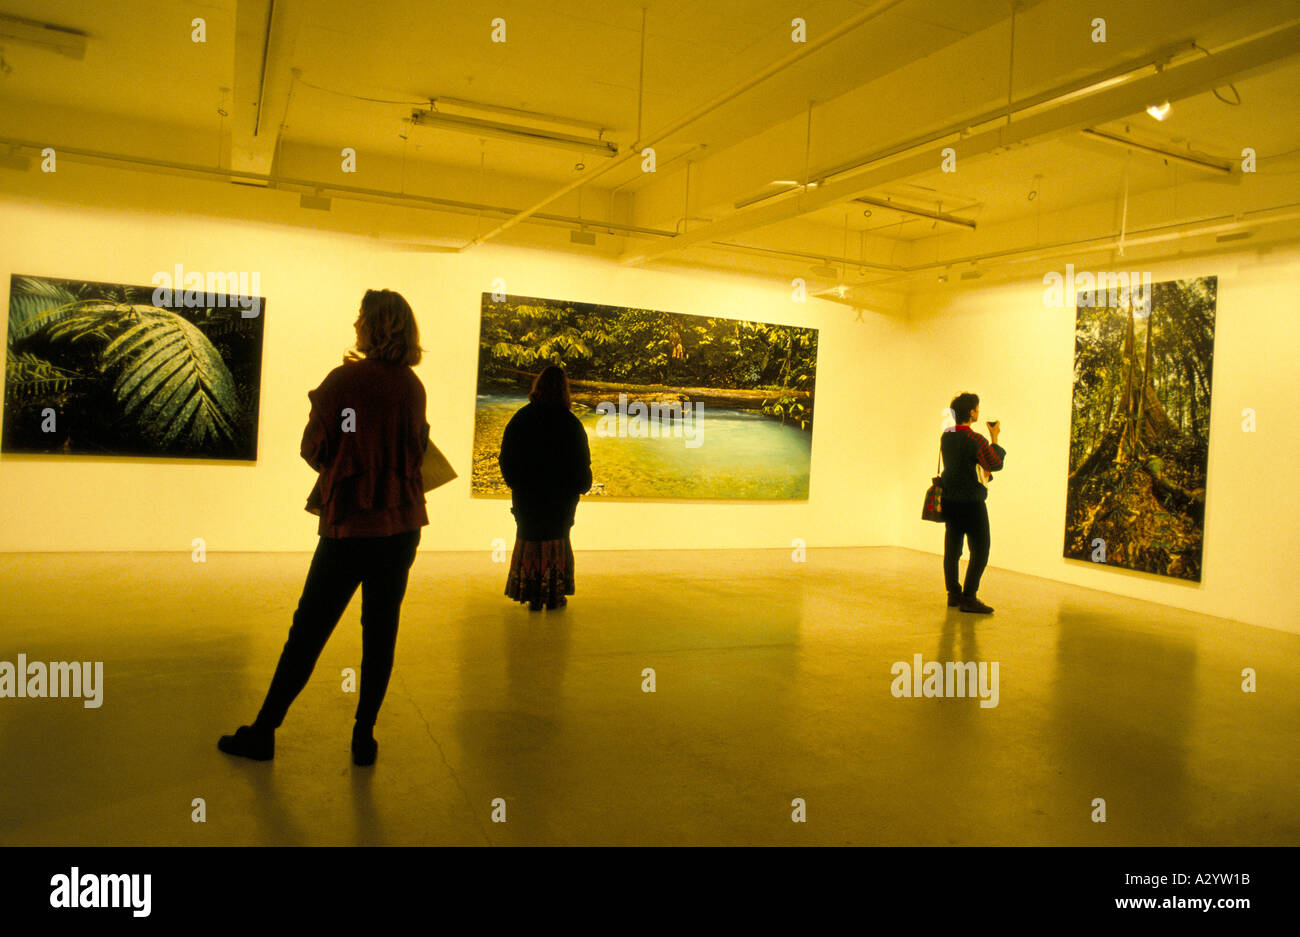 La visualizzazione all'Angela fiori galleria d'arte, una mostra di boyd evans Foto Stock